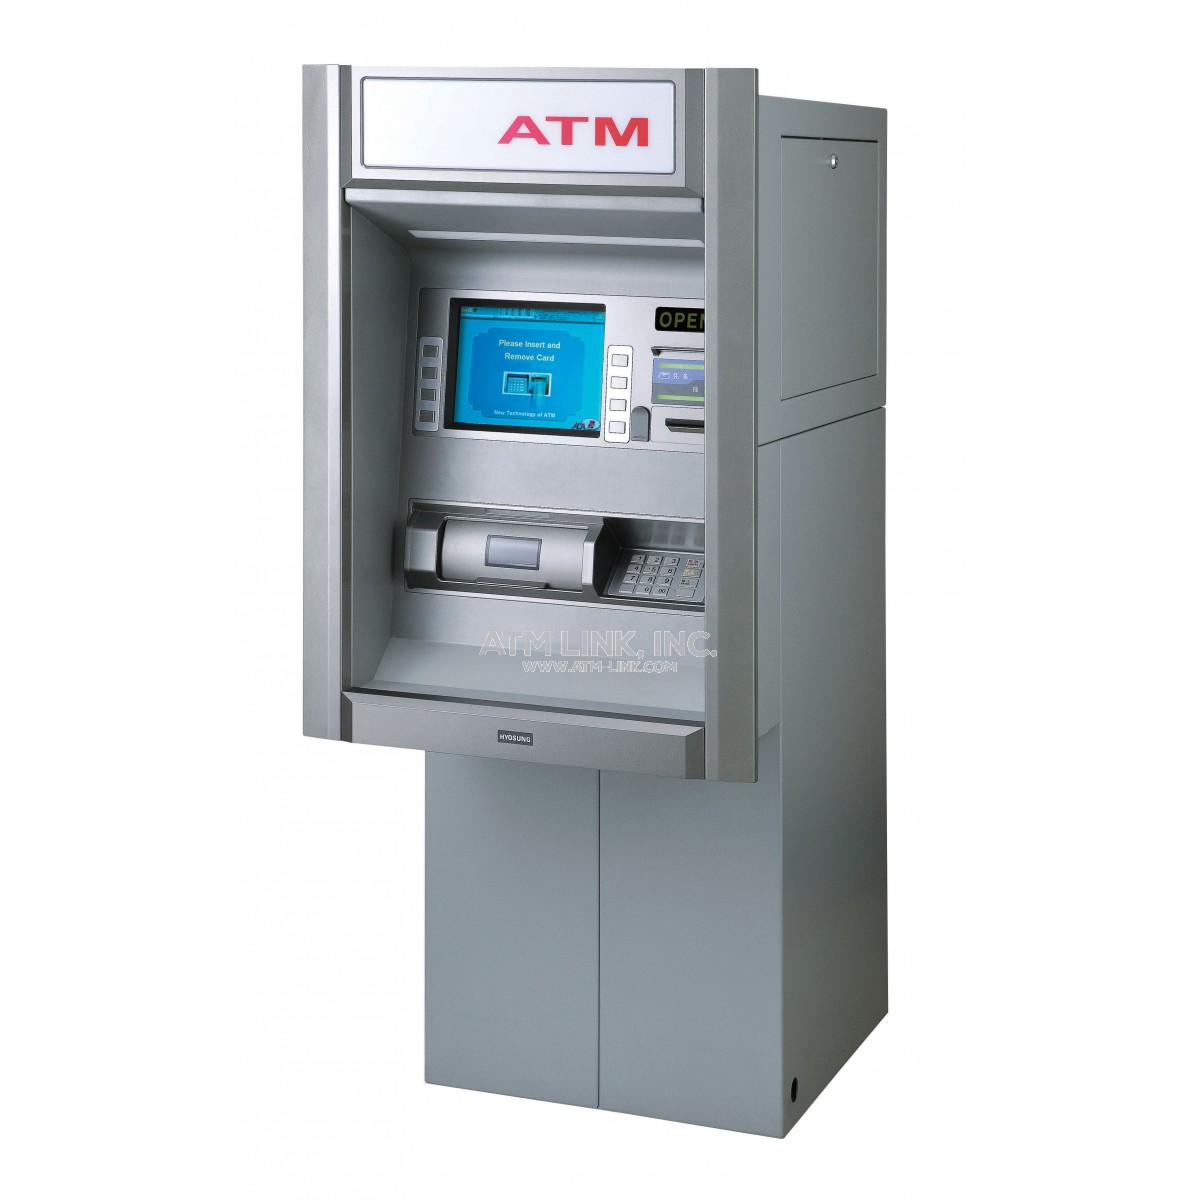 ROBBING AN ATM